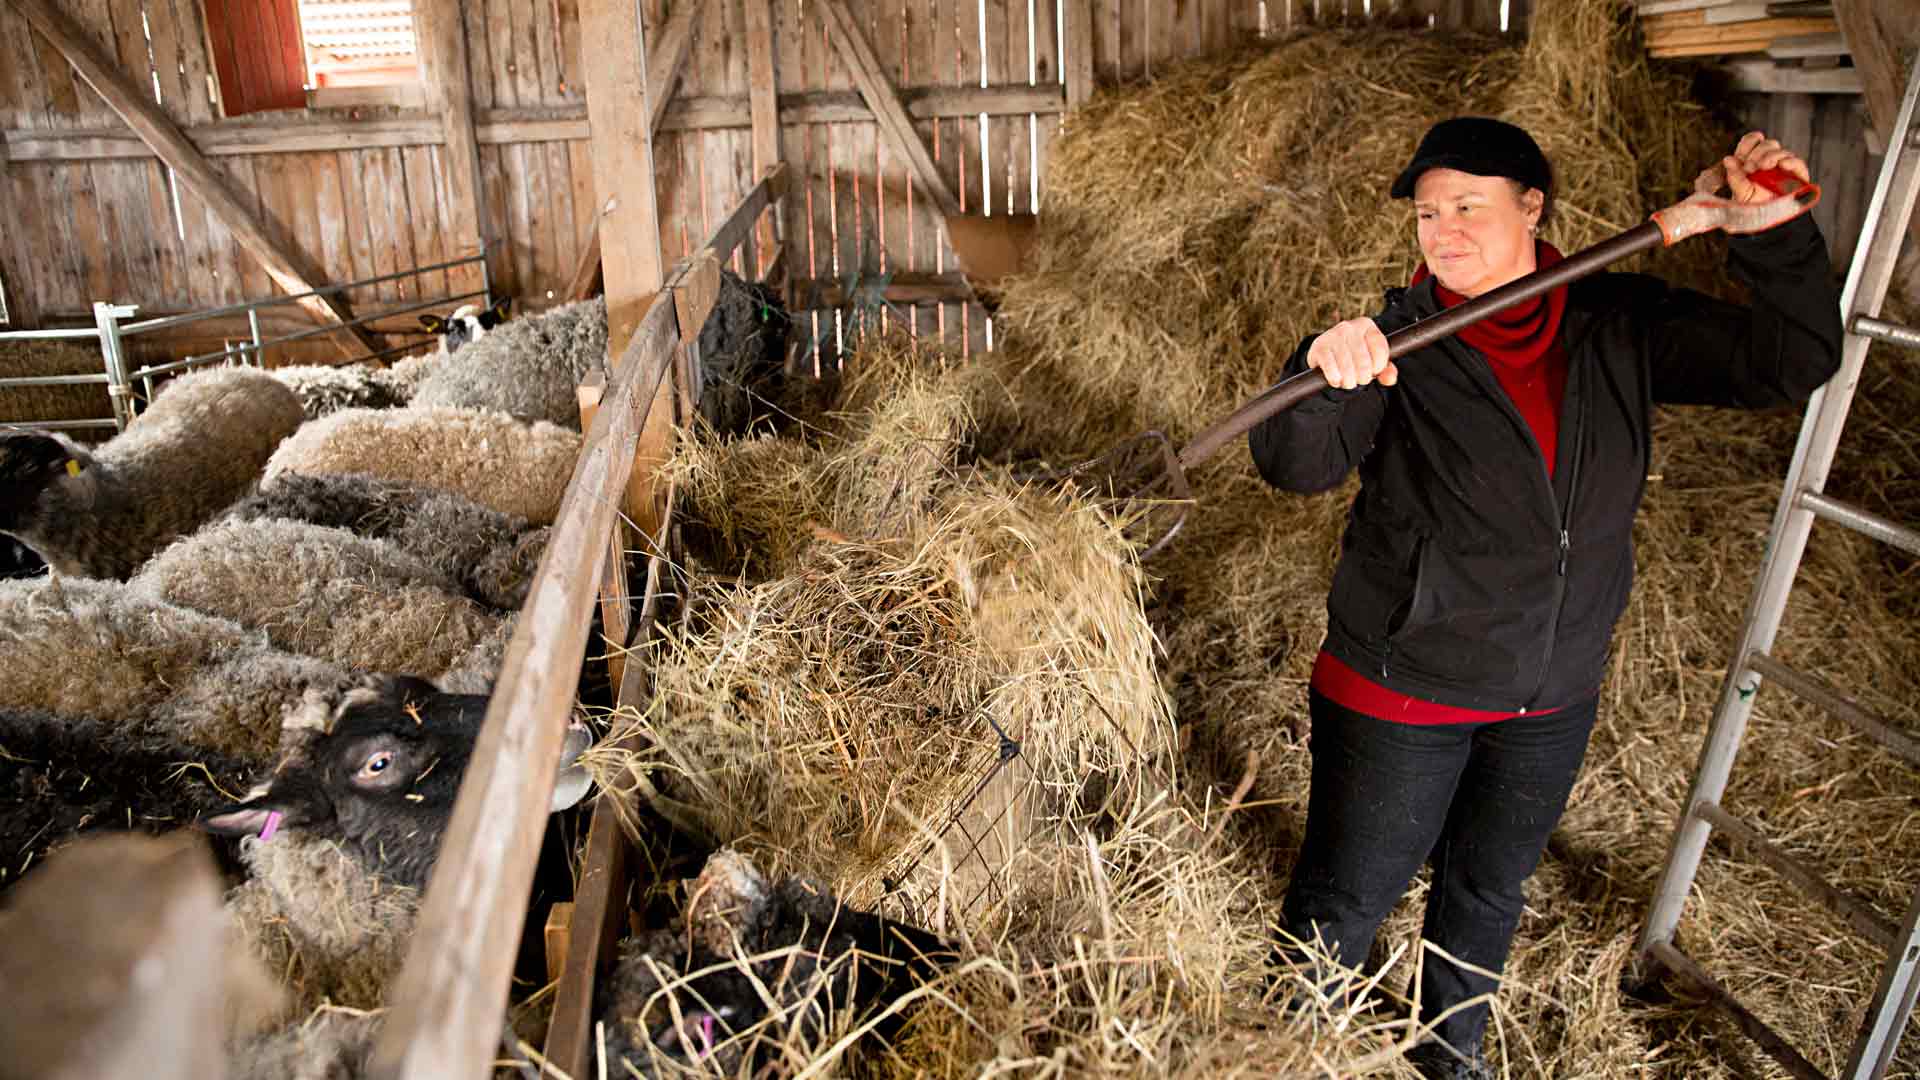 Kirsi Kujansuu on pyörittänyt lammastilaa viisi vuotta. ”Vaikka tämä on ollut aikamoista rumbaa, nautin työn monipuolisuudesta. Teen kaikkea talouslaskelmista traktorin korjaukseen.”